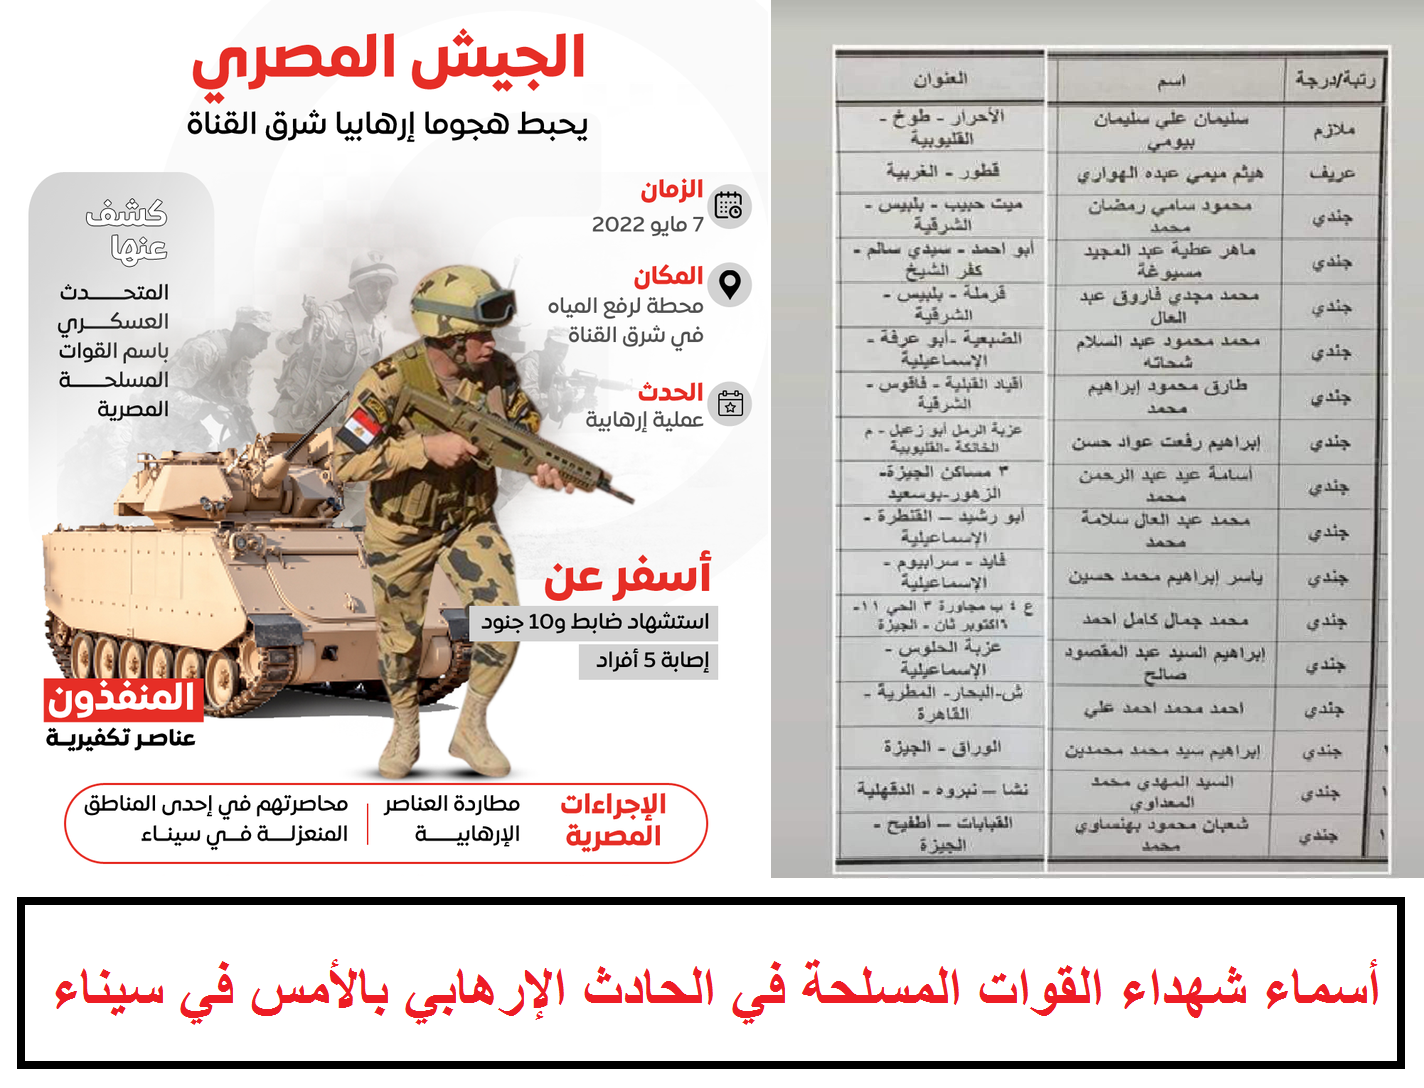 أسماء شهداء القوات المسلحة في الحادث الإرهابي بالأمس في سيناء ضابط وعريف و9 جنود